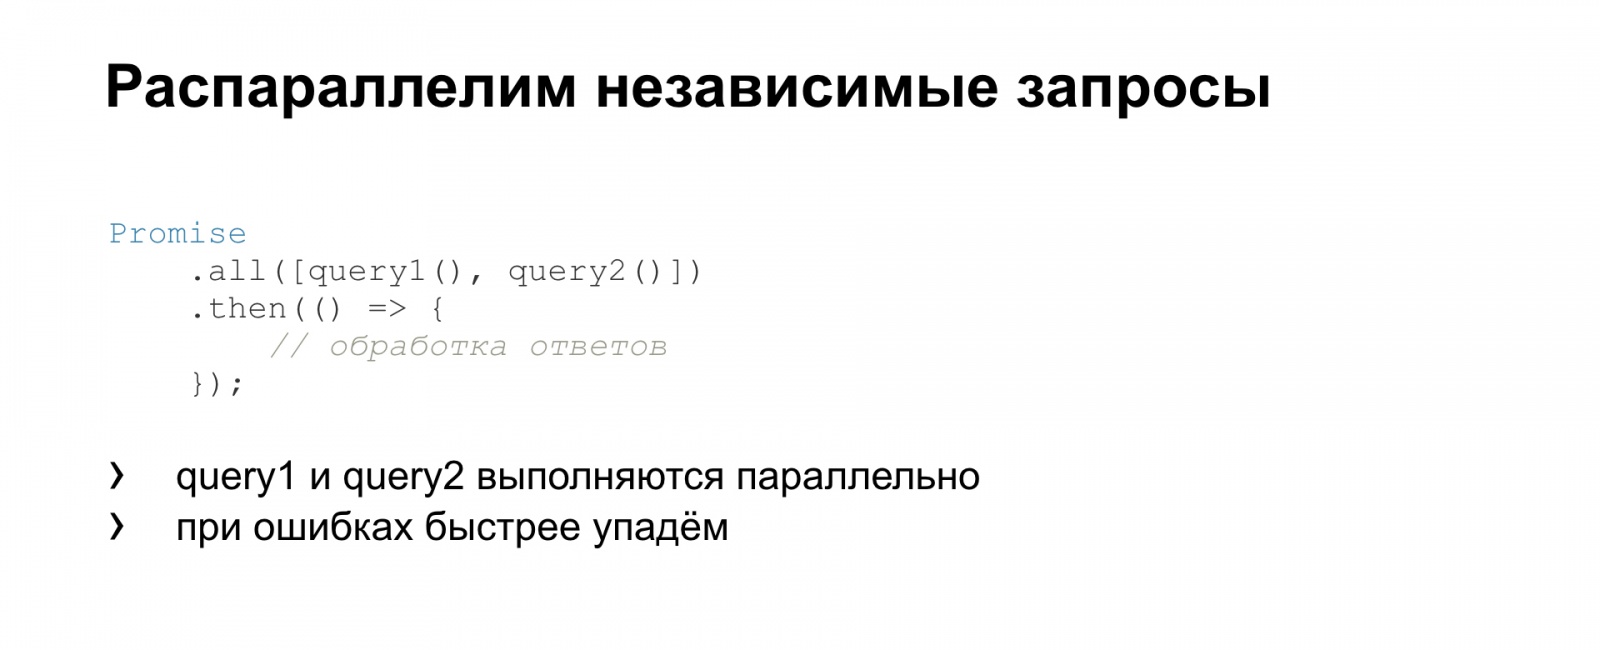 Тяжёлое бремя времени. Доклад Яндекса о типичных ошибках в работе со временем - 21